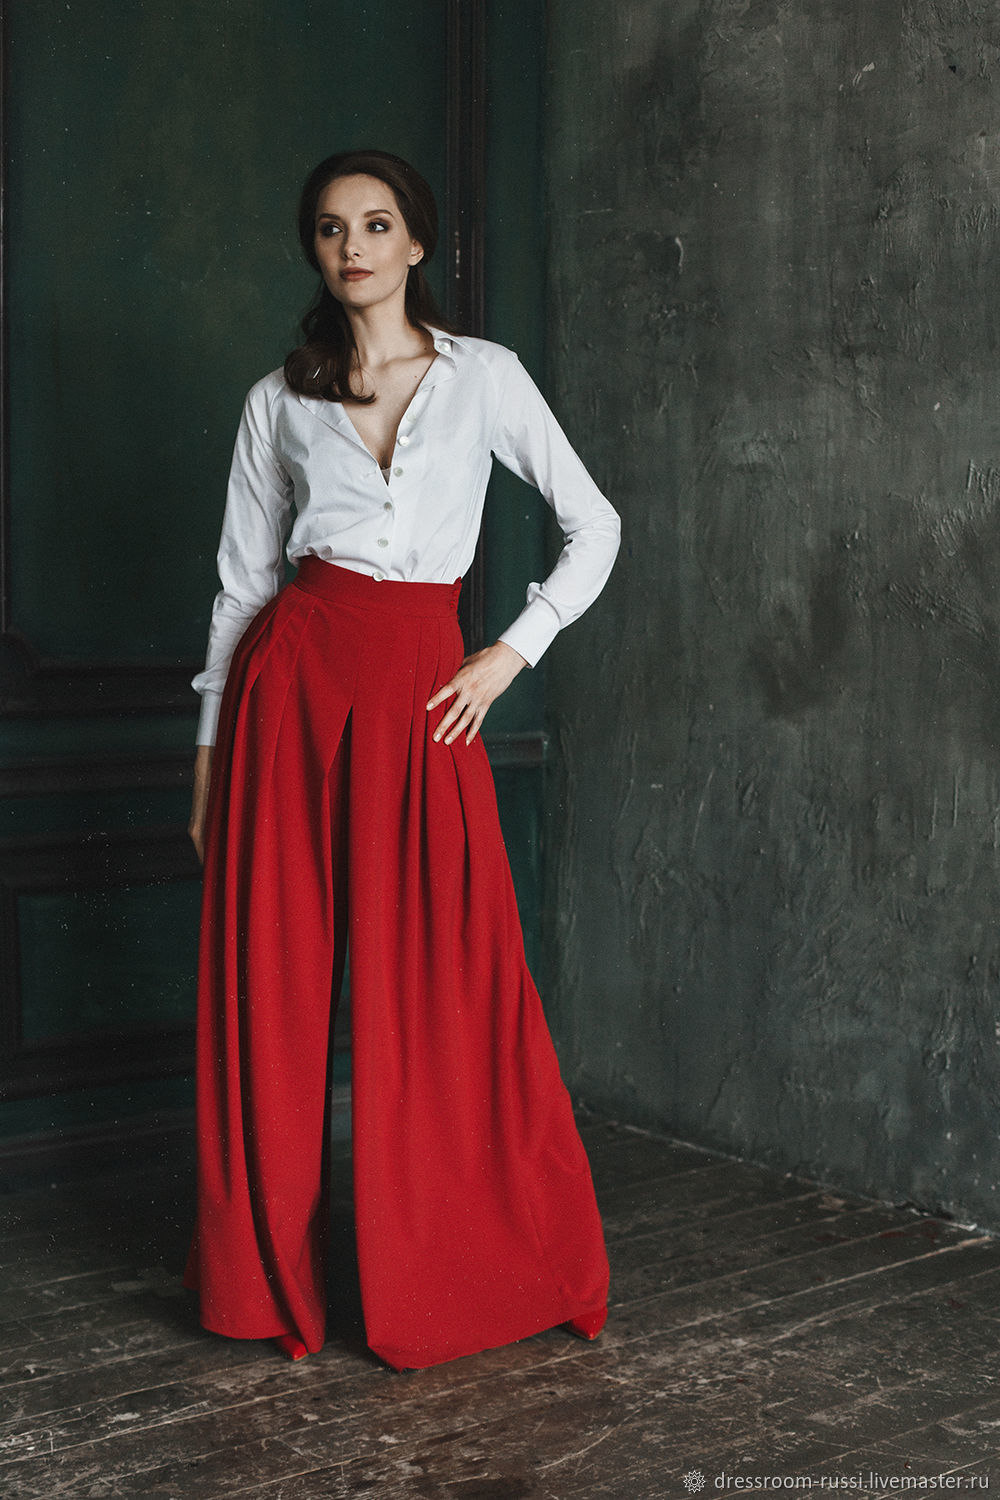 Длинная юбка с блузкой. Красный костюм(юбка и жакет) Гери Вебер 2013. Длинная юбка. Женщина в длинной юбке. Женский костюм с длинной юбкой.